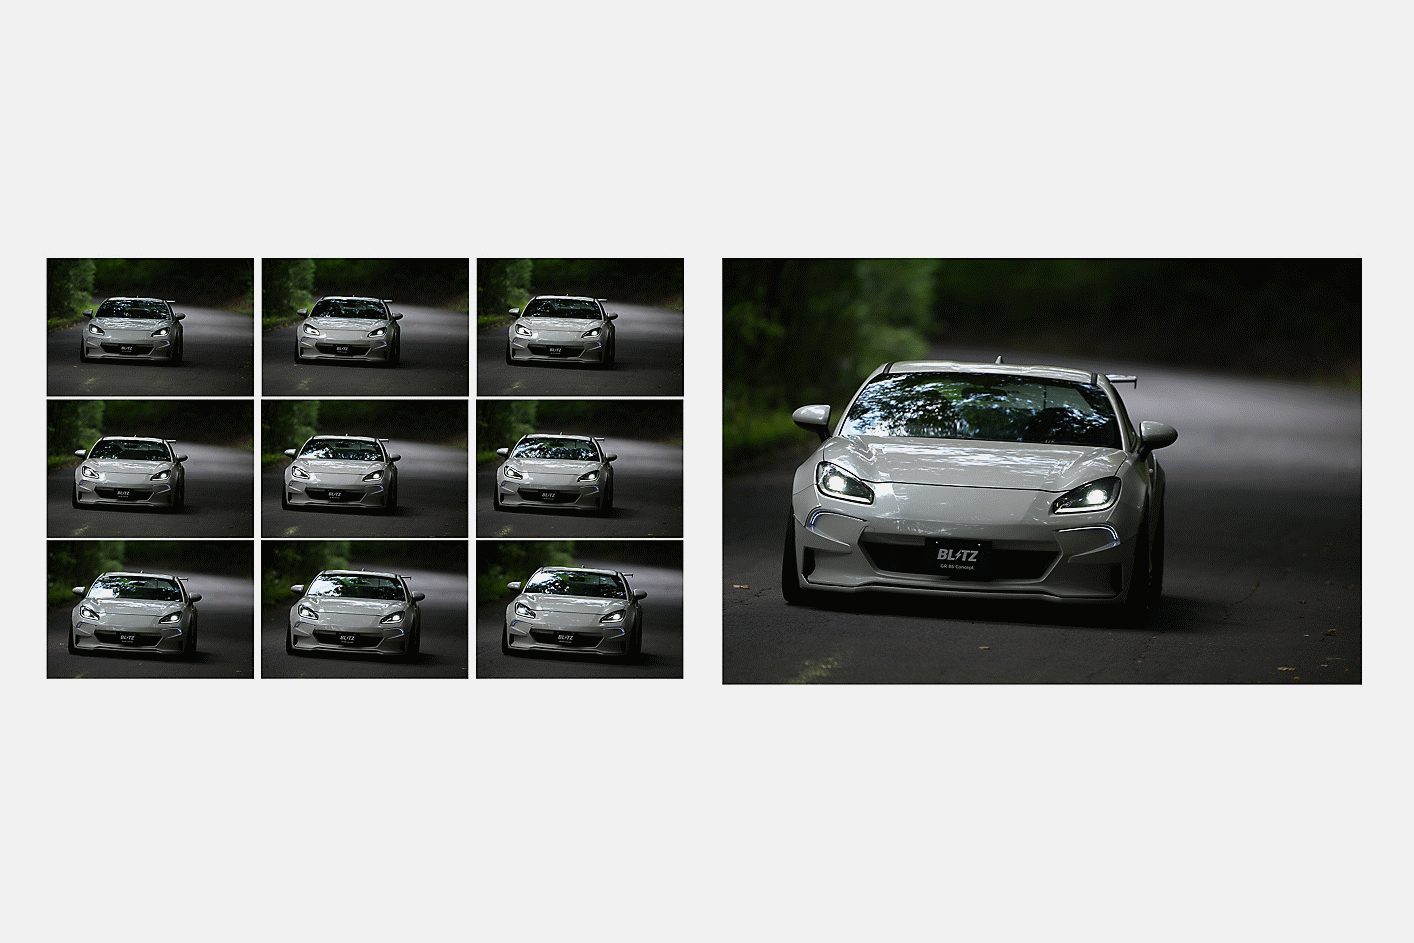 Images d'une voiture prise en rafale à 10 images/s avec suivi AF/AE